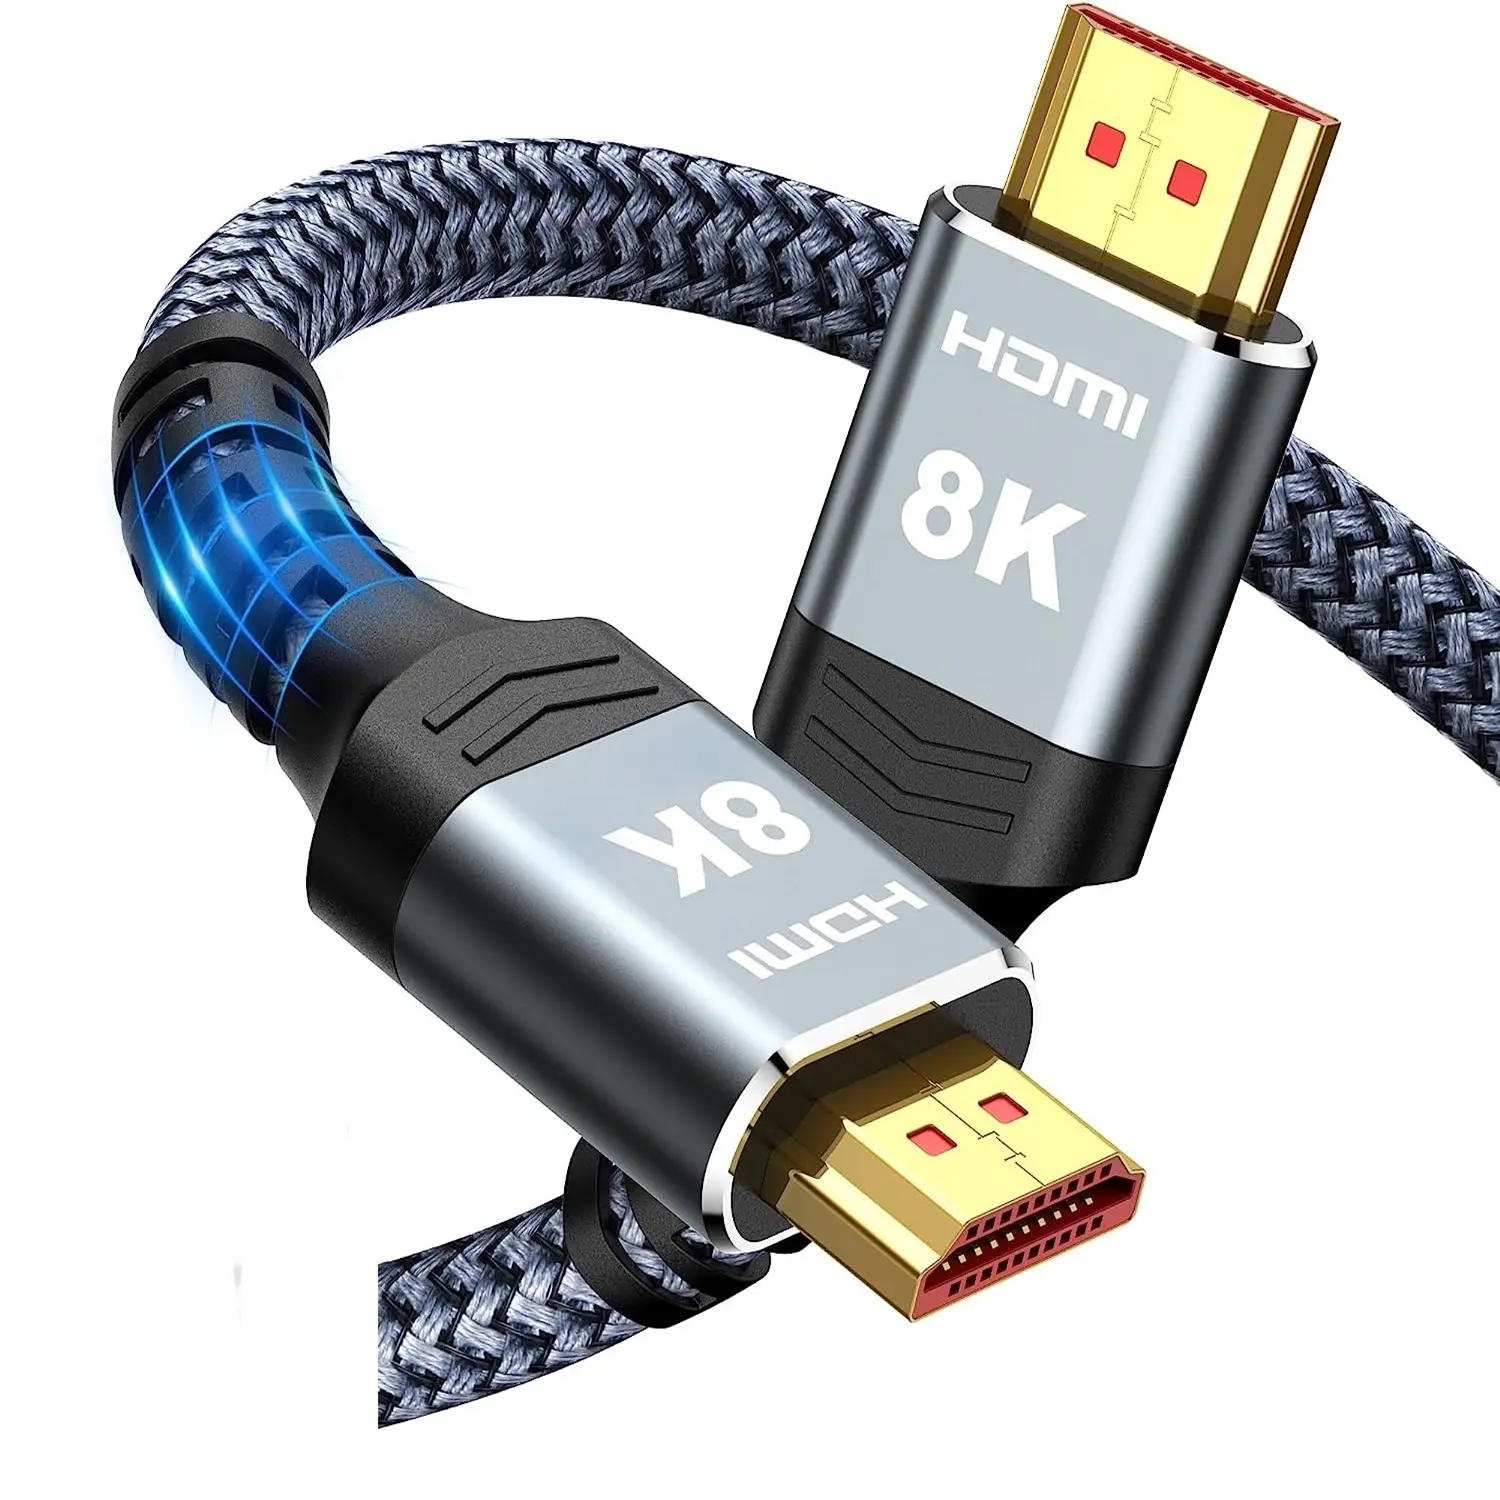 10 K 8K認定超高速HDMIコード、HDTVなど用の4K @ 120Hz 8 K @ 60Hz HDMI2.1ケーブルHDMIケーブルをサポート